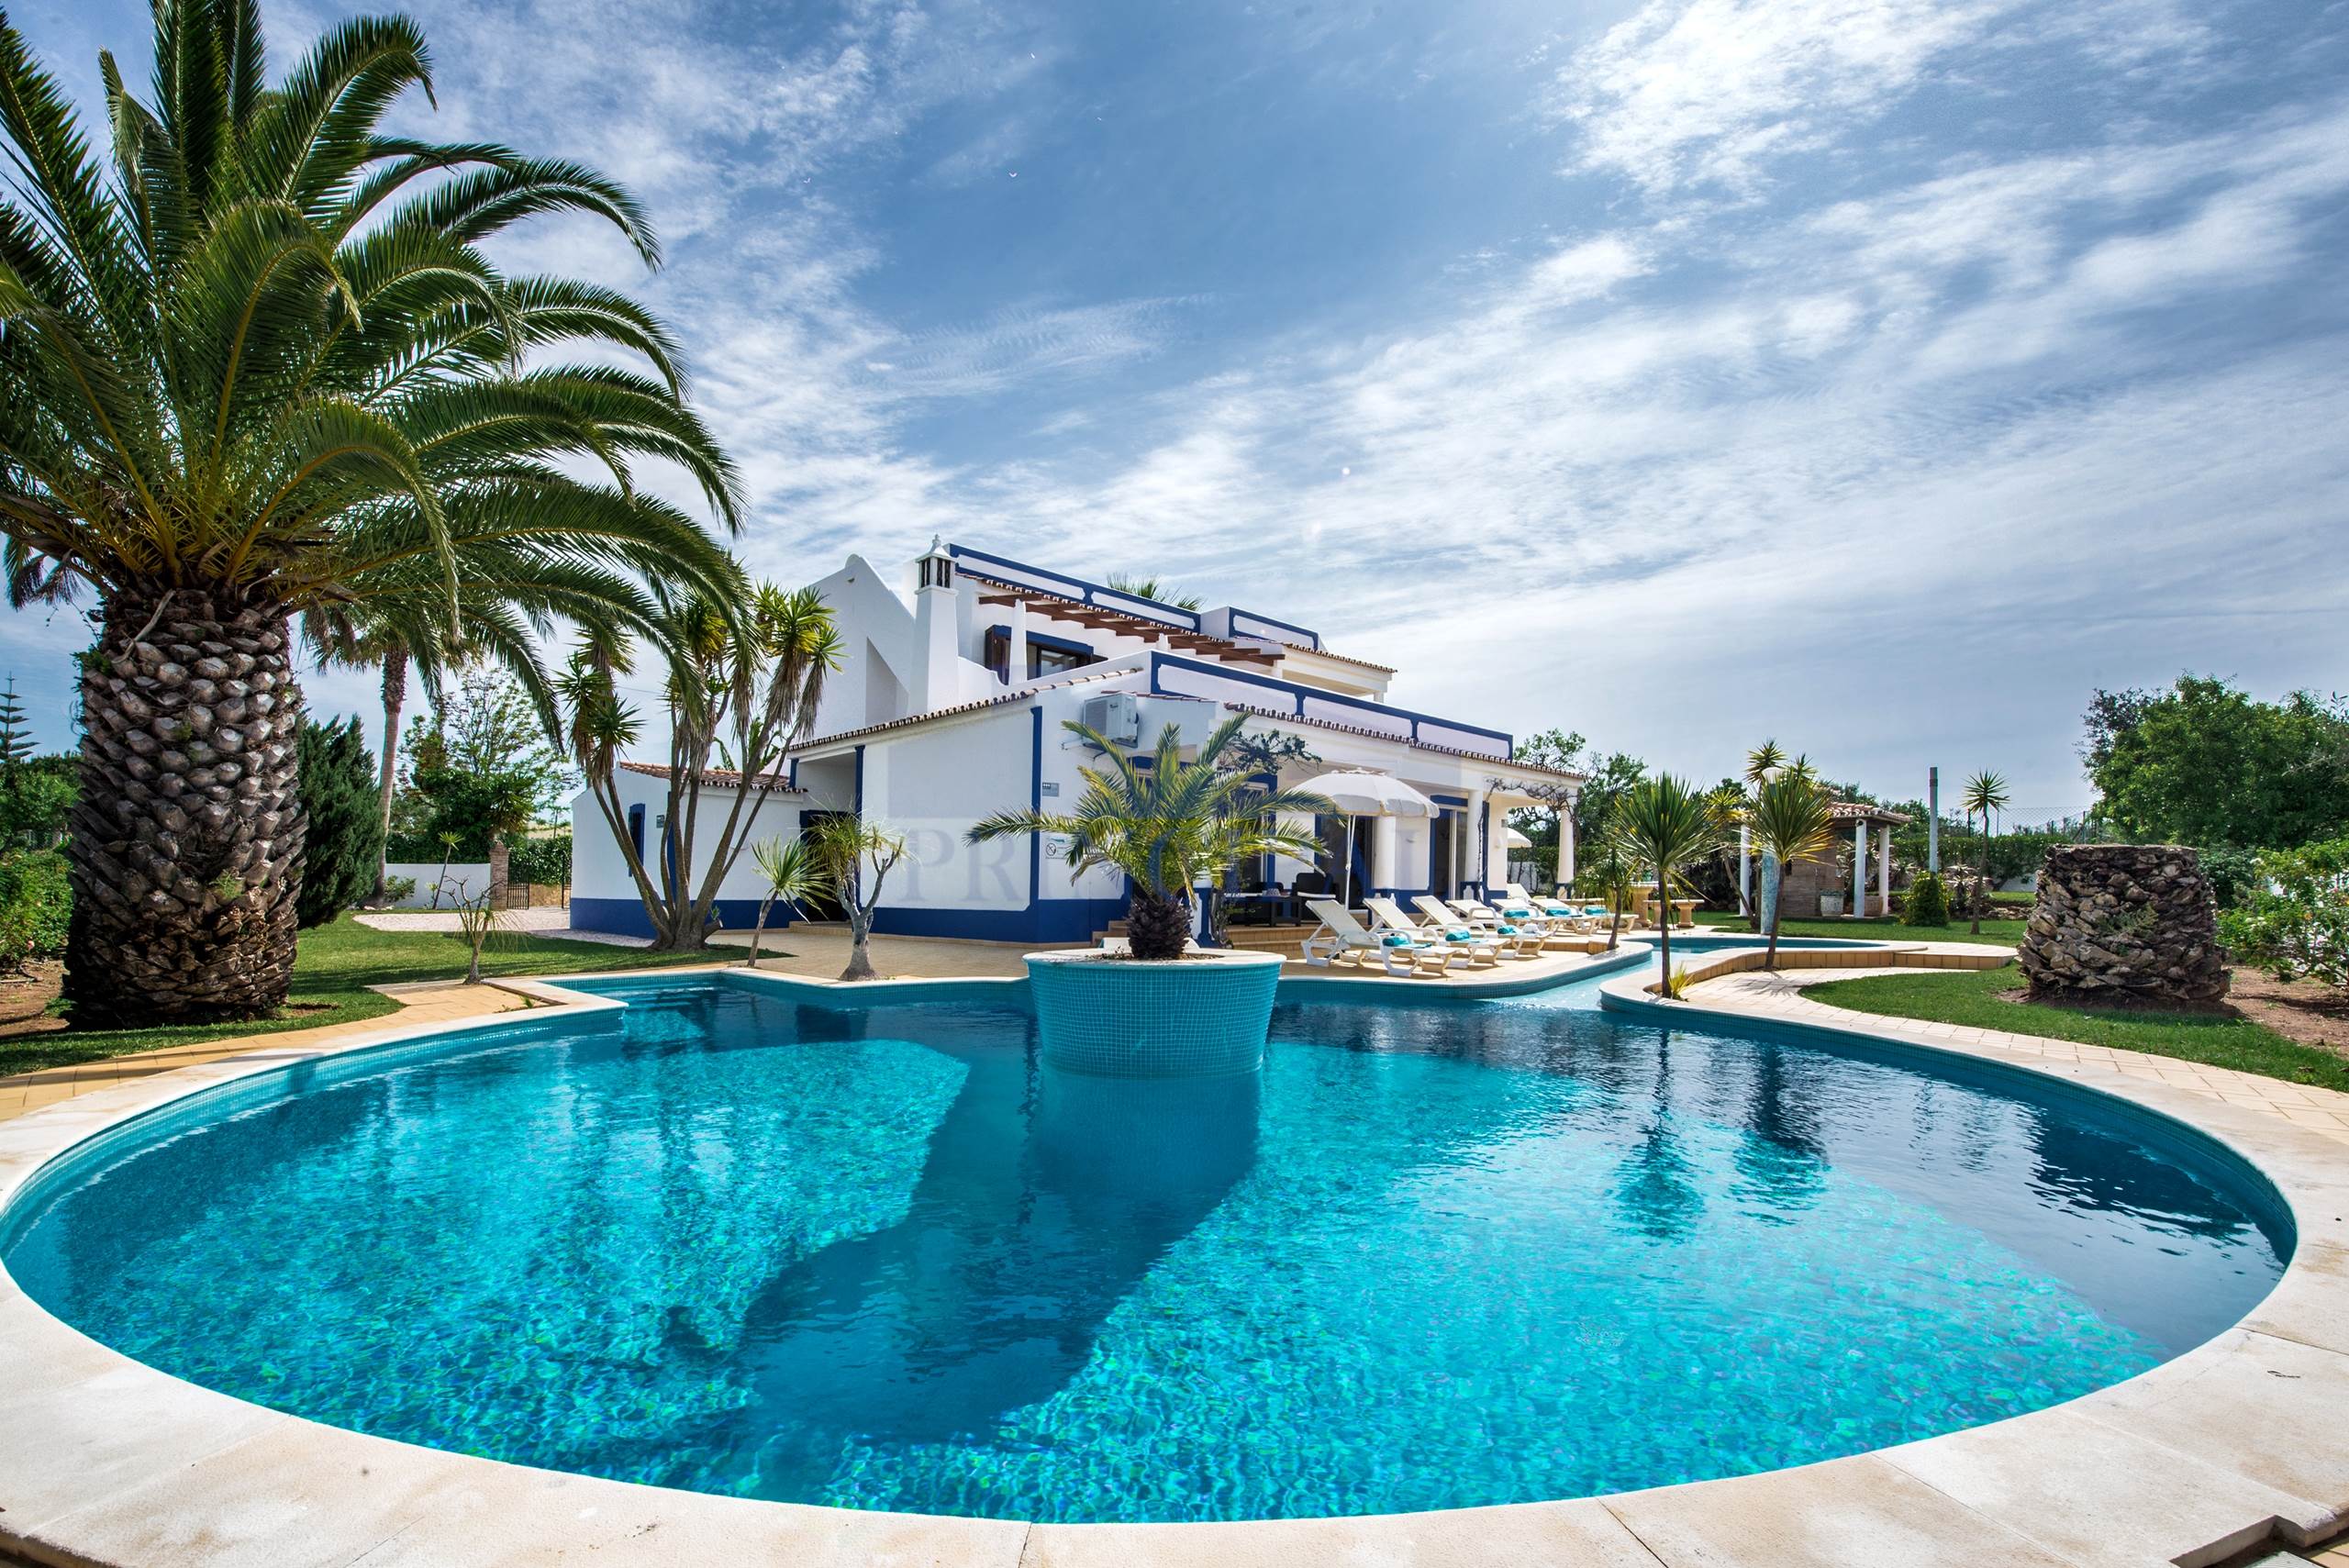 Villa de 4 chambres avec piscine et jardin dans un terrain spacieux, en quartier calme